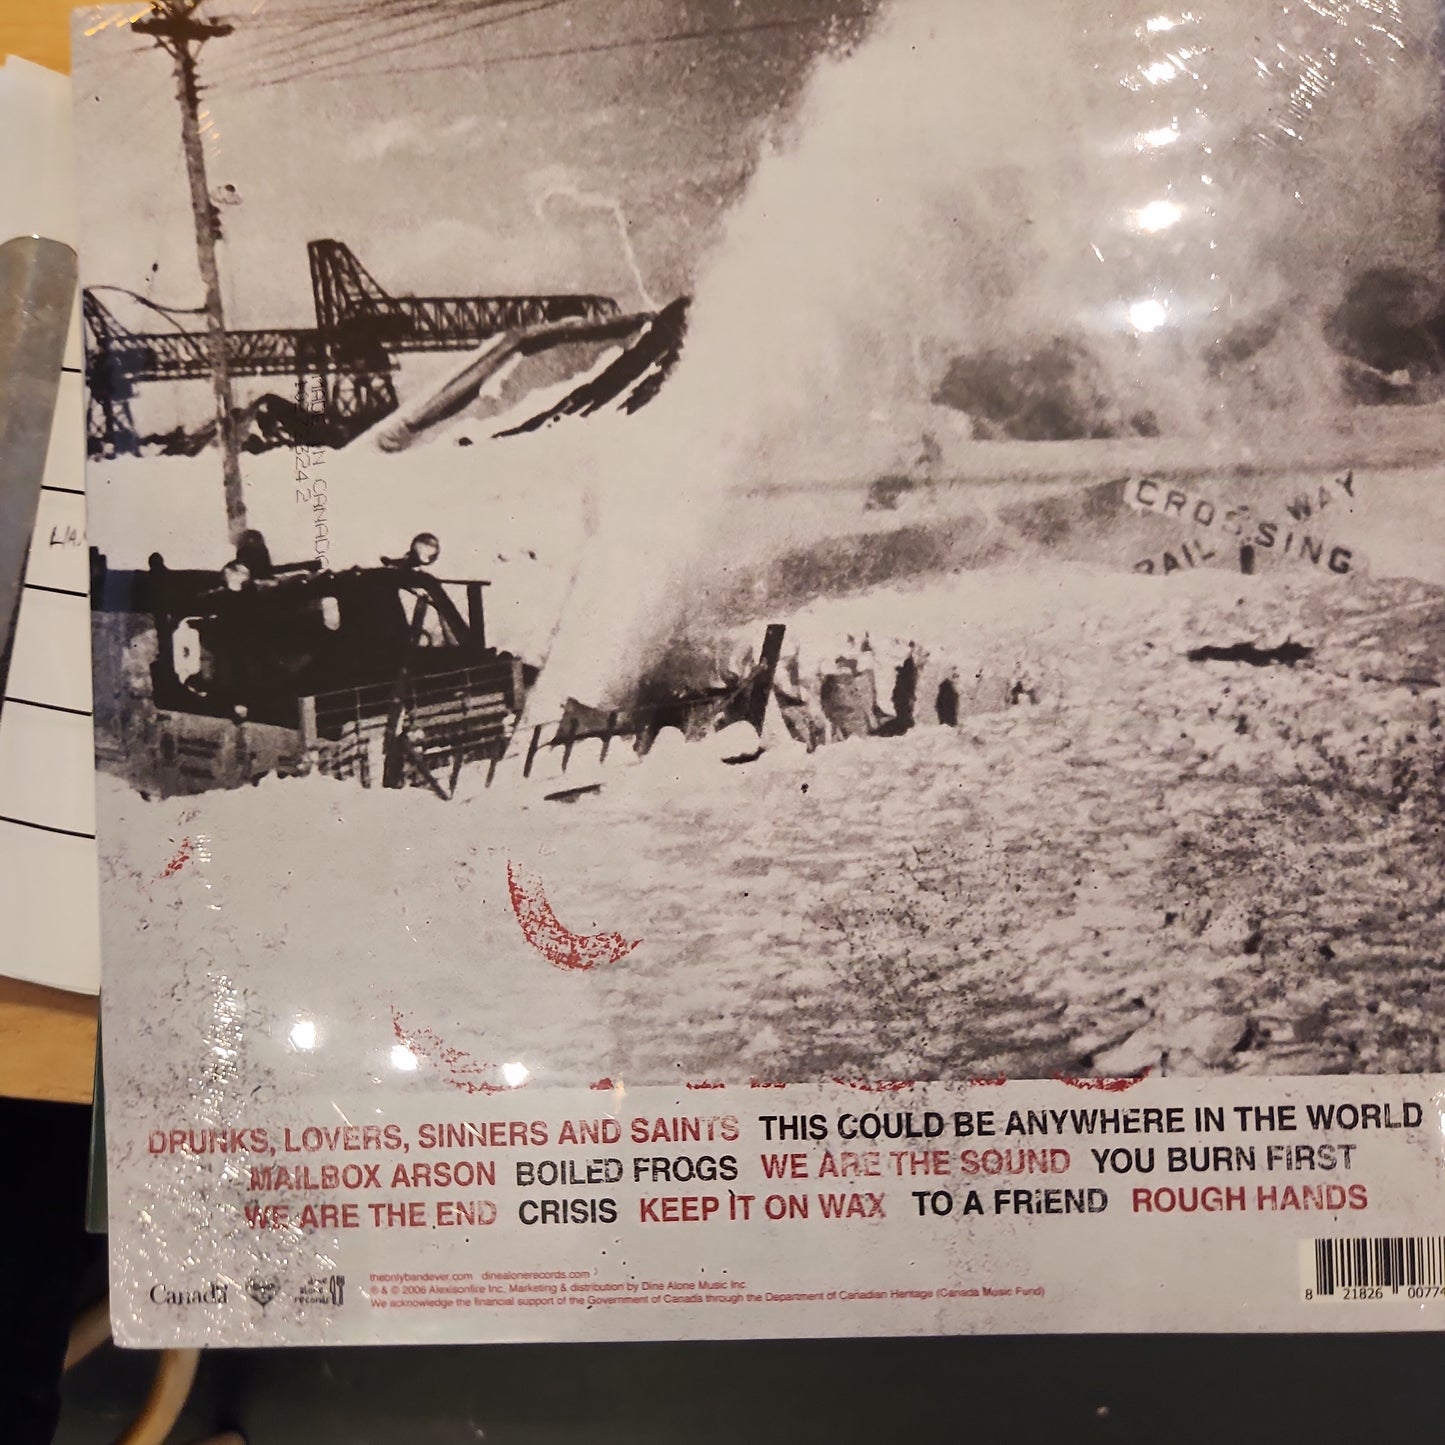 Alexisonfire - Crisis - Double Vinyl LP